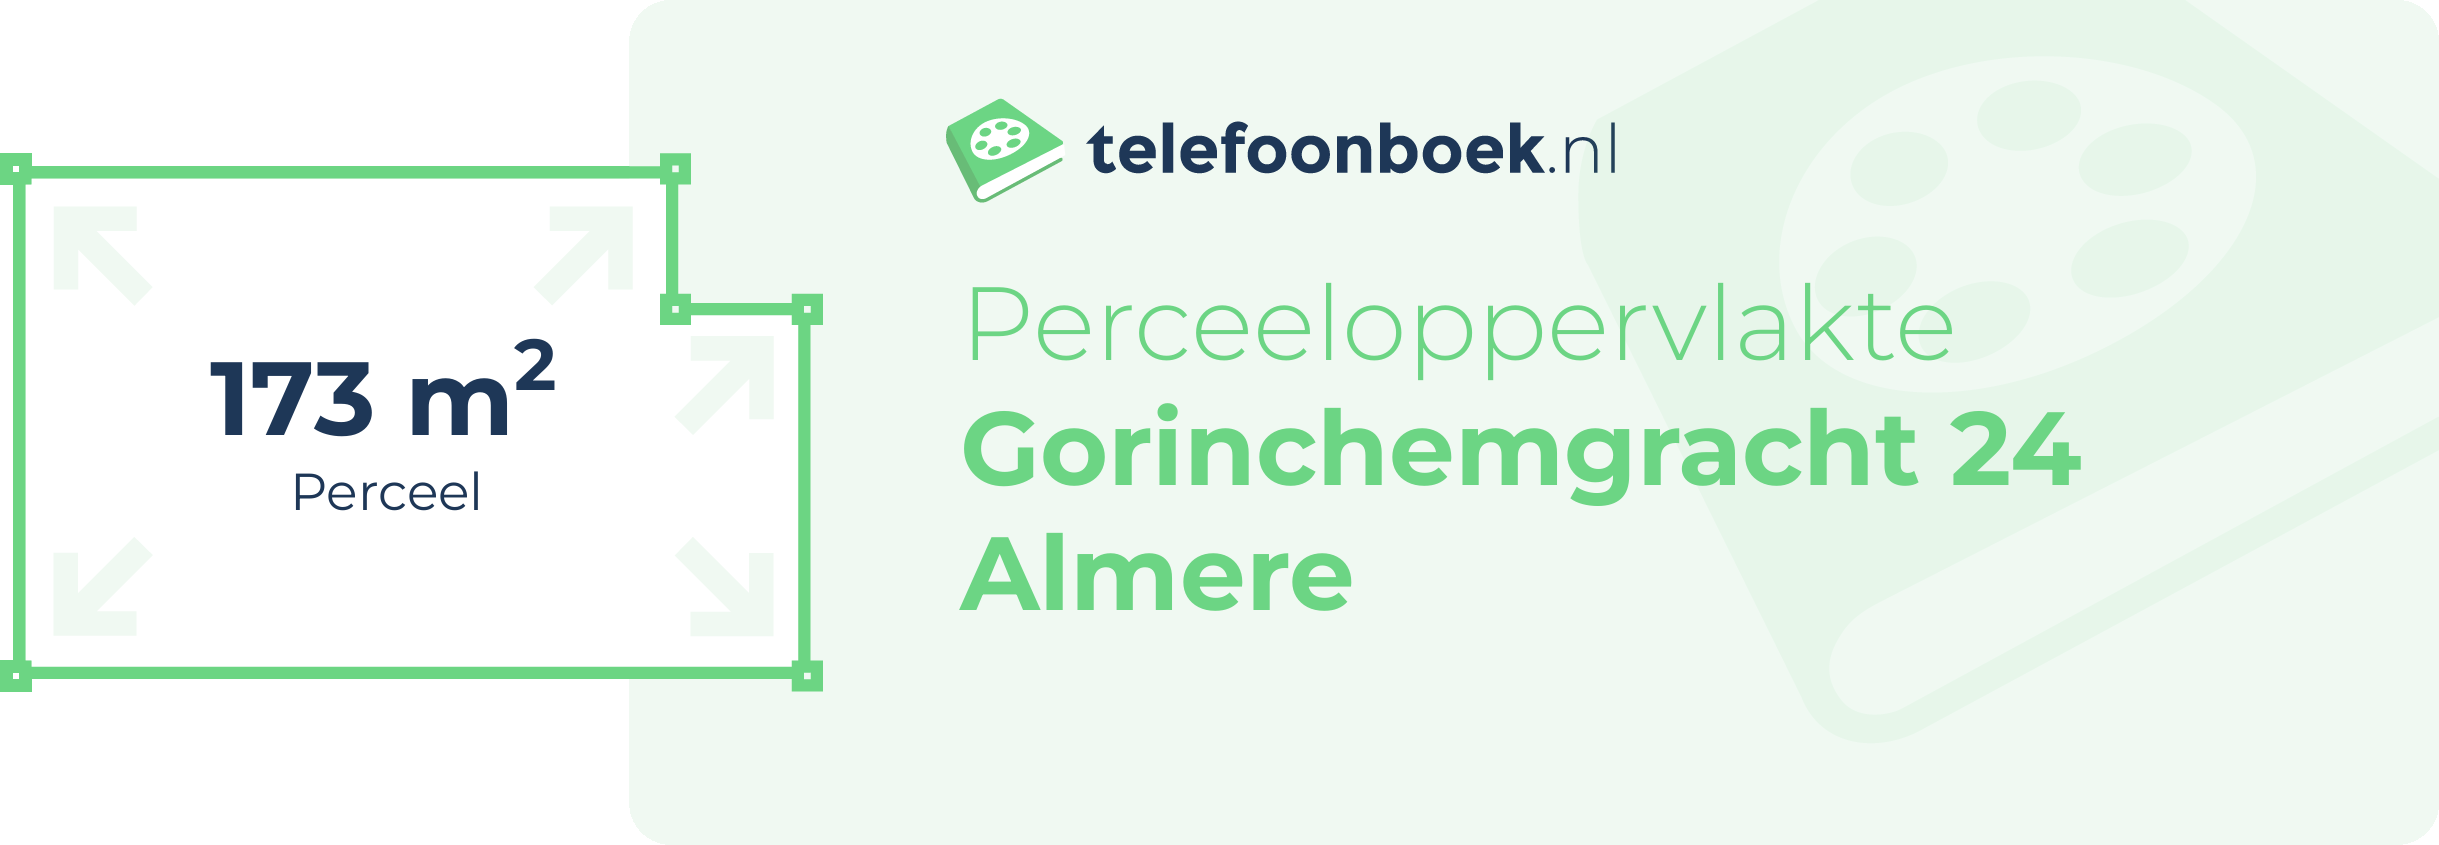 Perceeloppervlakte Gorinchemgracht 24 Almere